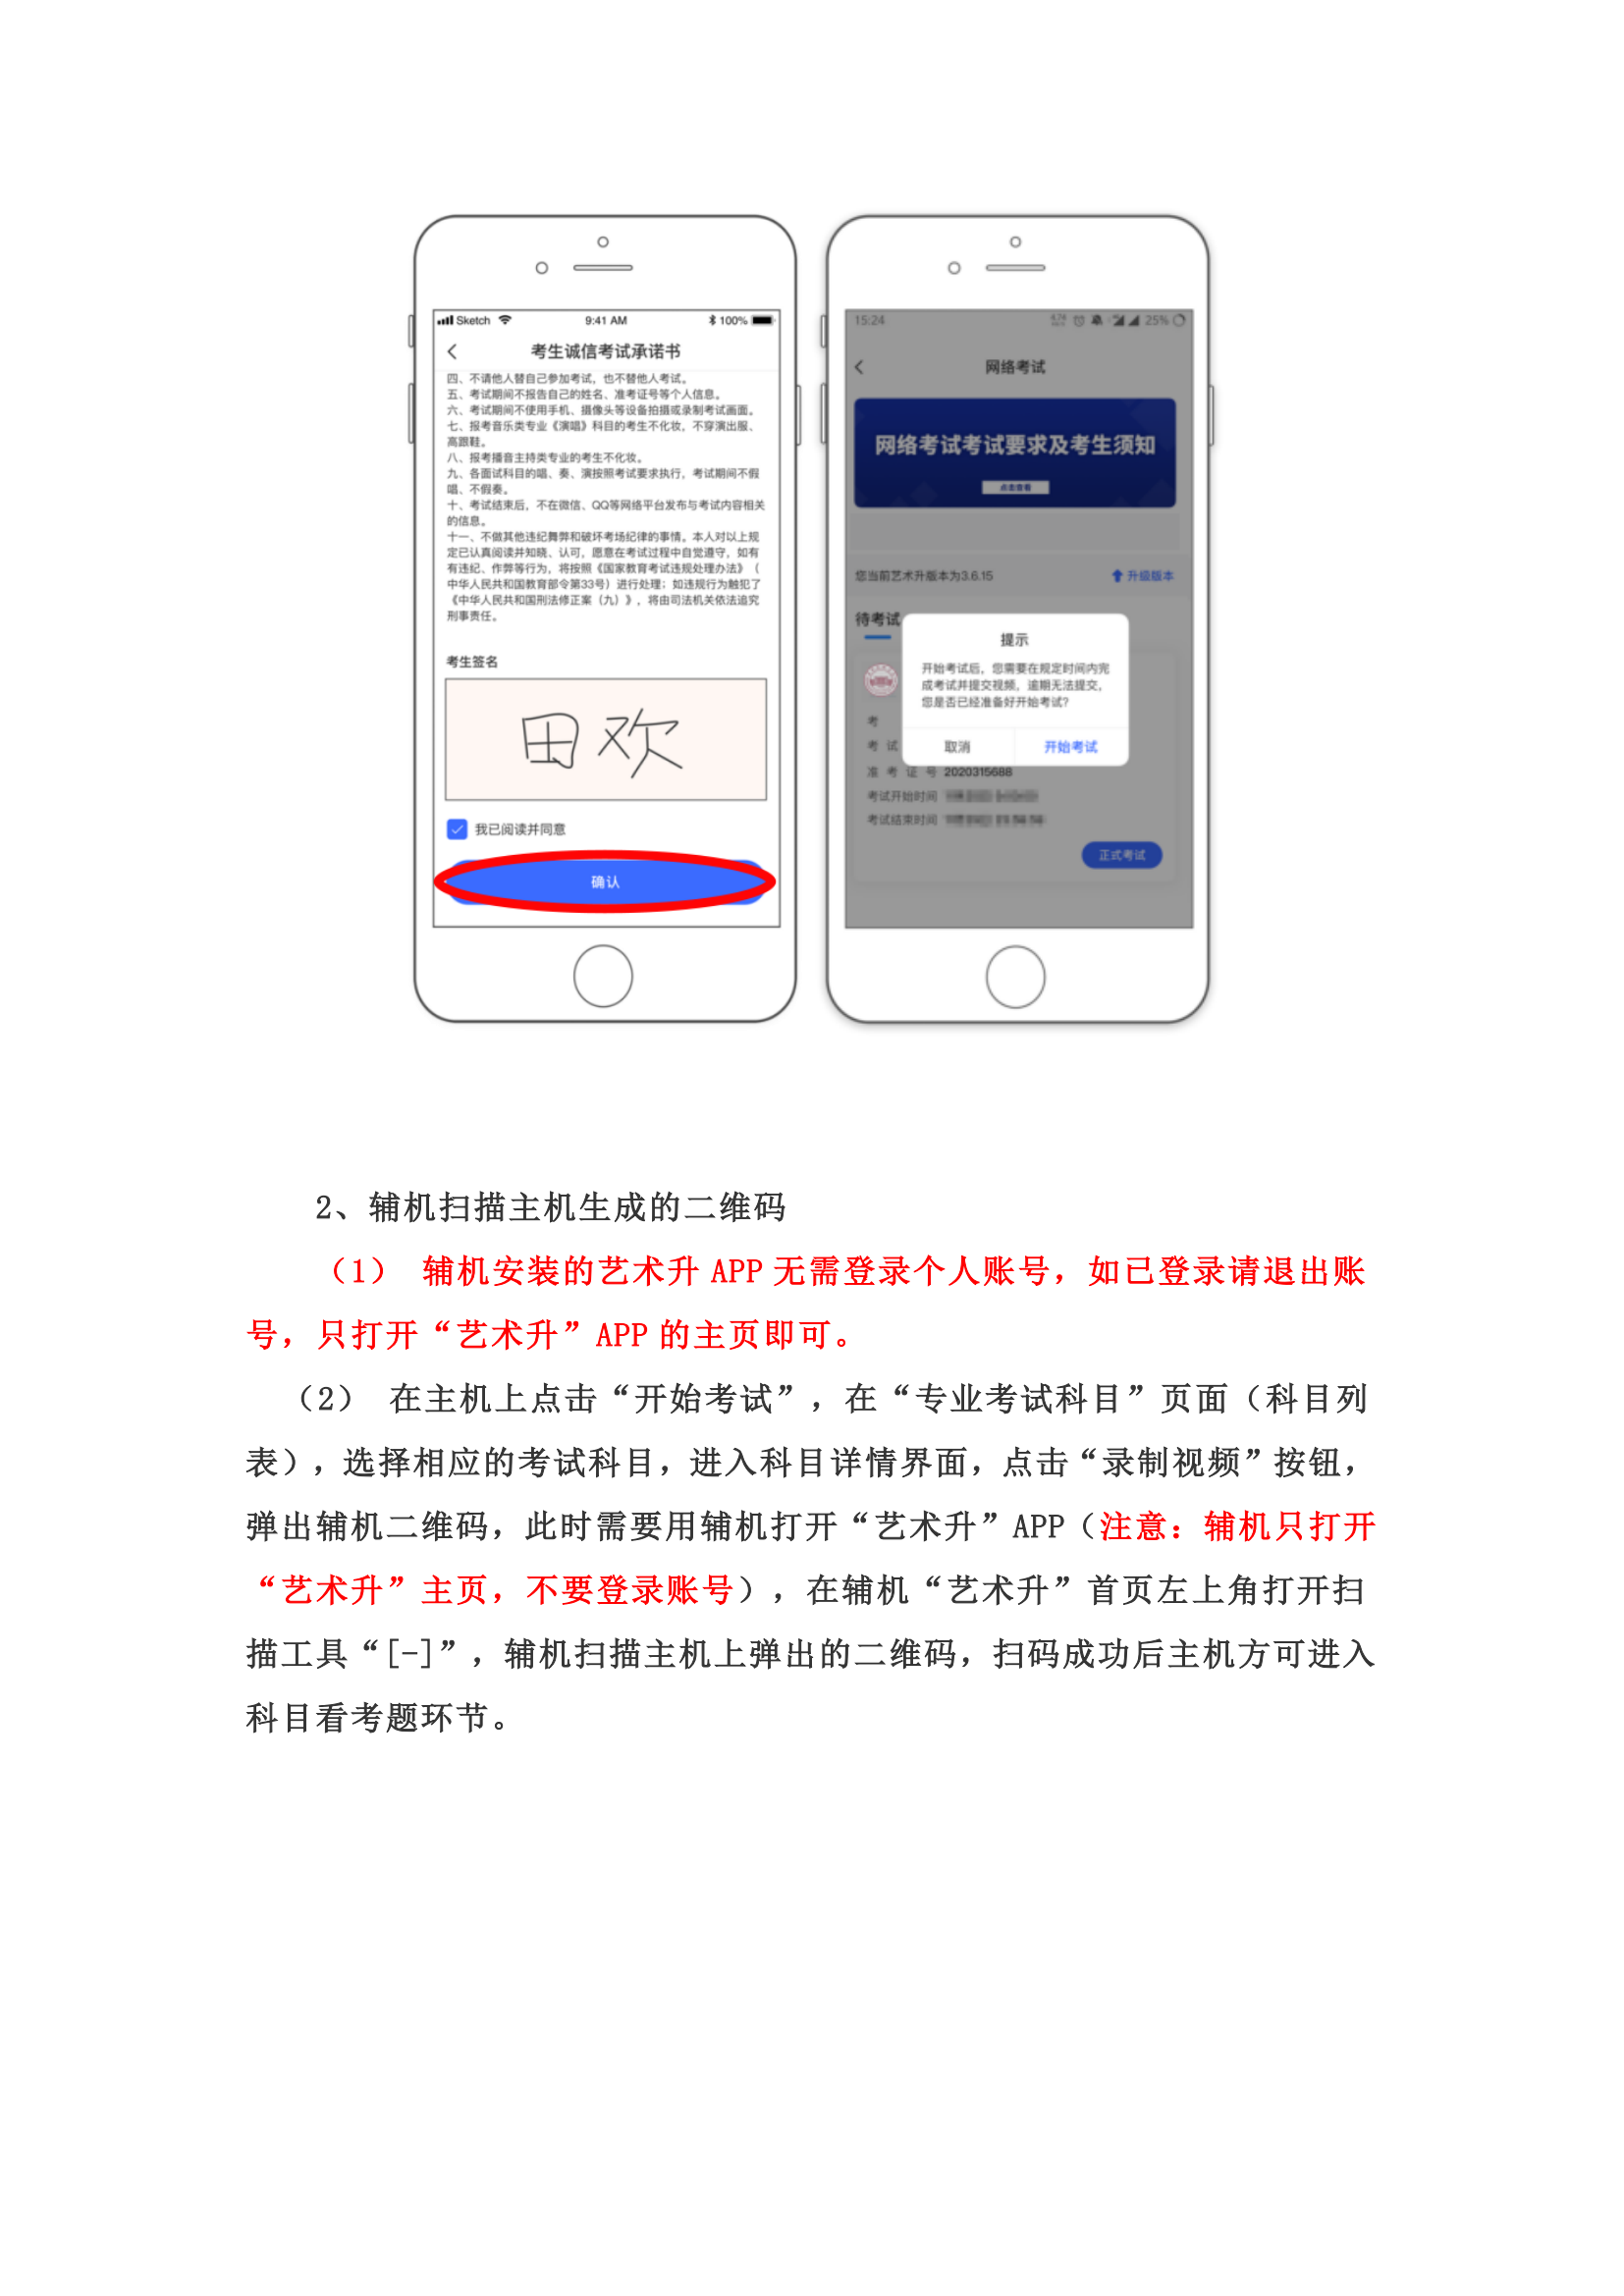 附件1：广州美术学院艺术升APP网络考试操作说明_03.png